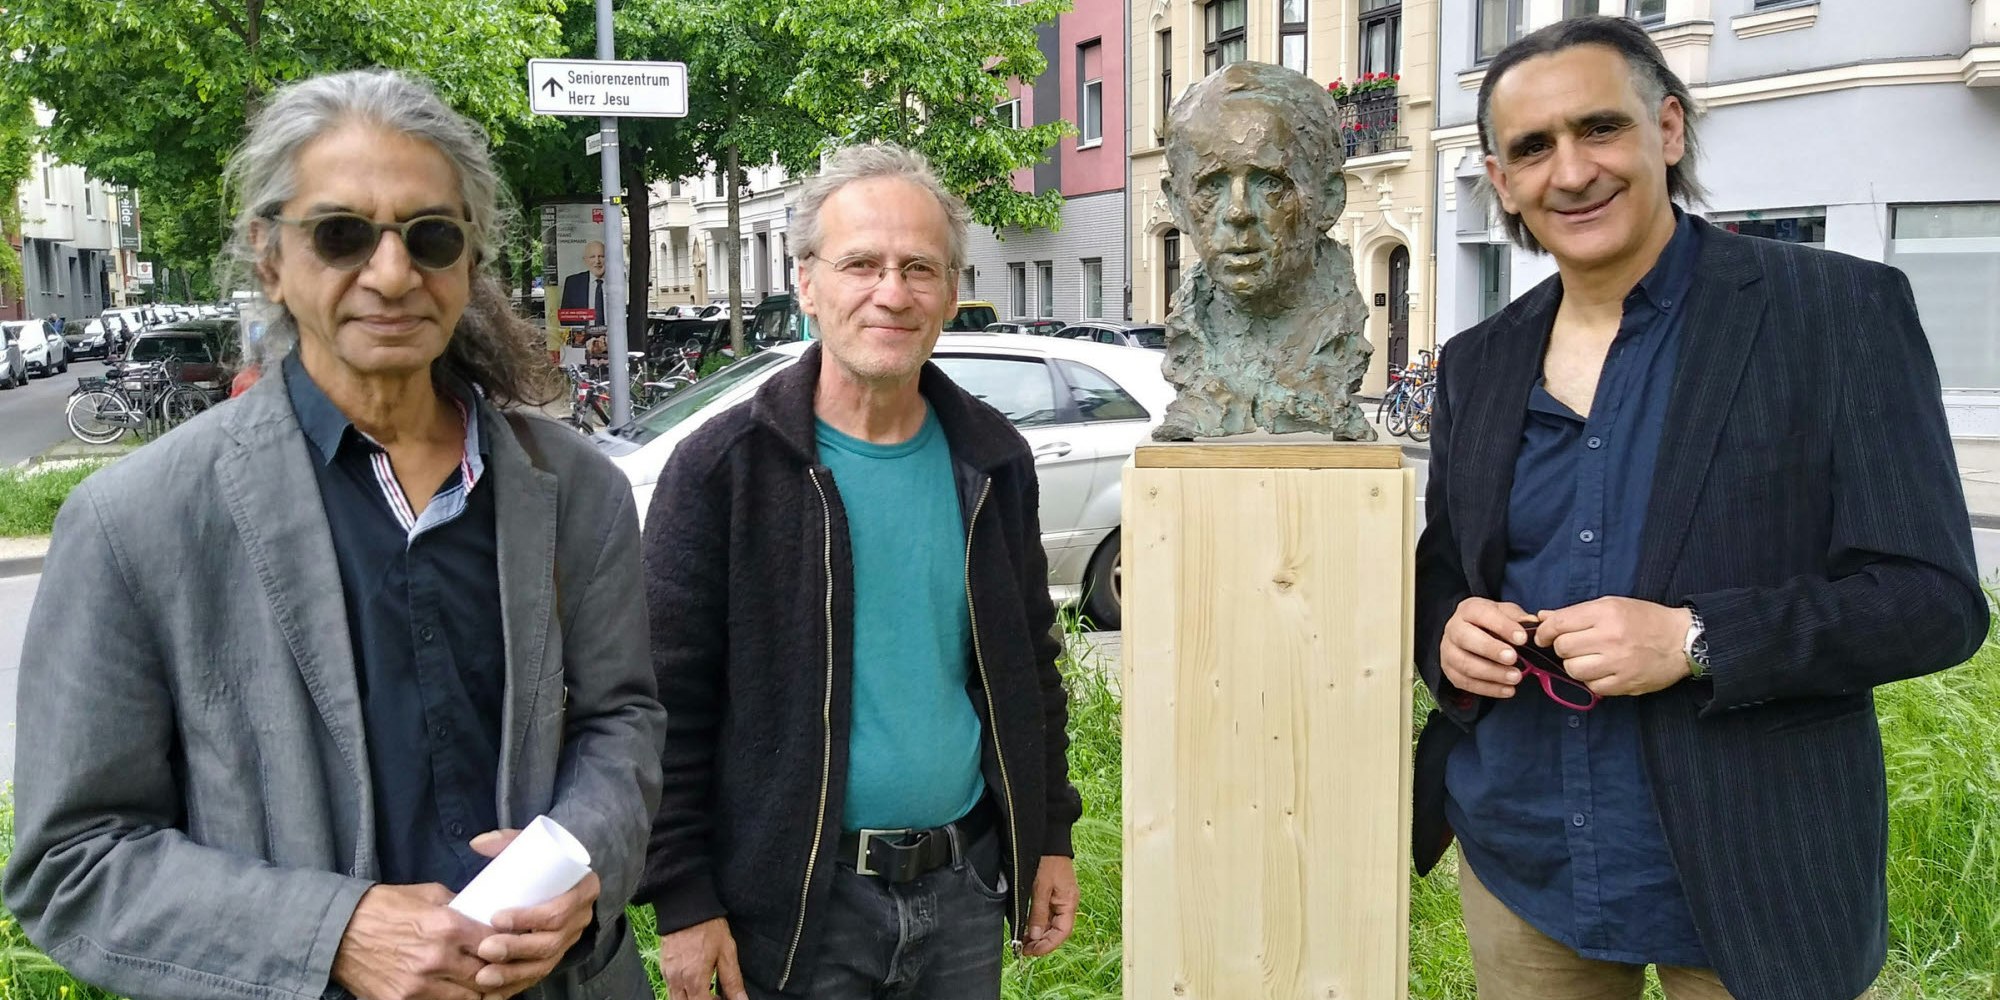 Die Büste von Böll soll an der Teutoburger Straße stehen. Dafür setzen sich ein: Niteen Gupte, Thomas Eichert und Oliver Graine.